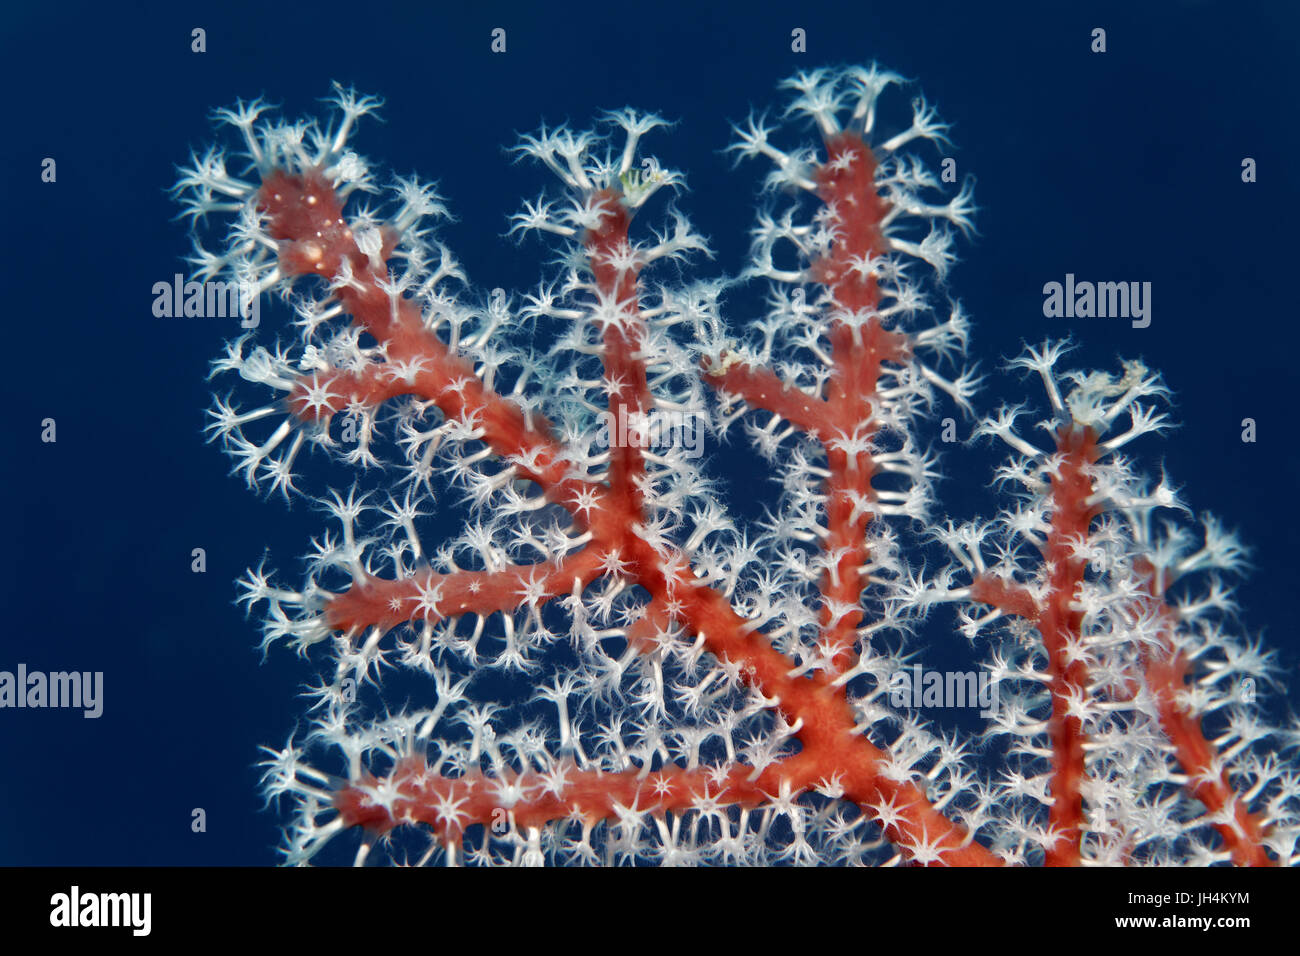 Polipi, bianco, Colonia, horn coral (Menella sp.), gorgonie, Palawan Mimaropa, Lago di Sulu, Oceano Pacifico, Filippine Foto Stock